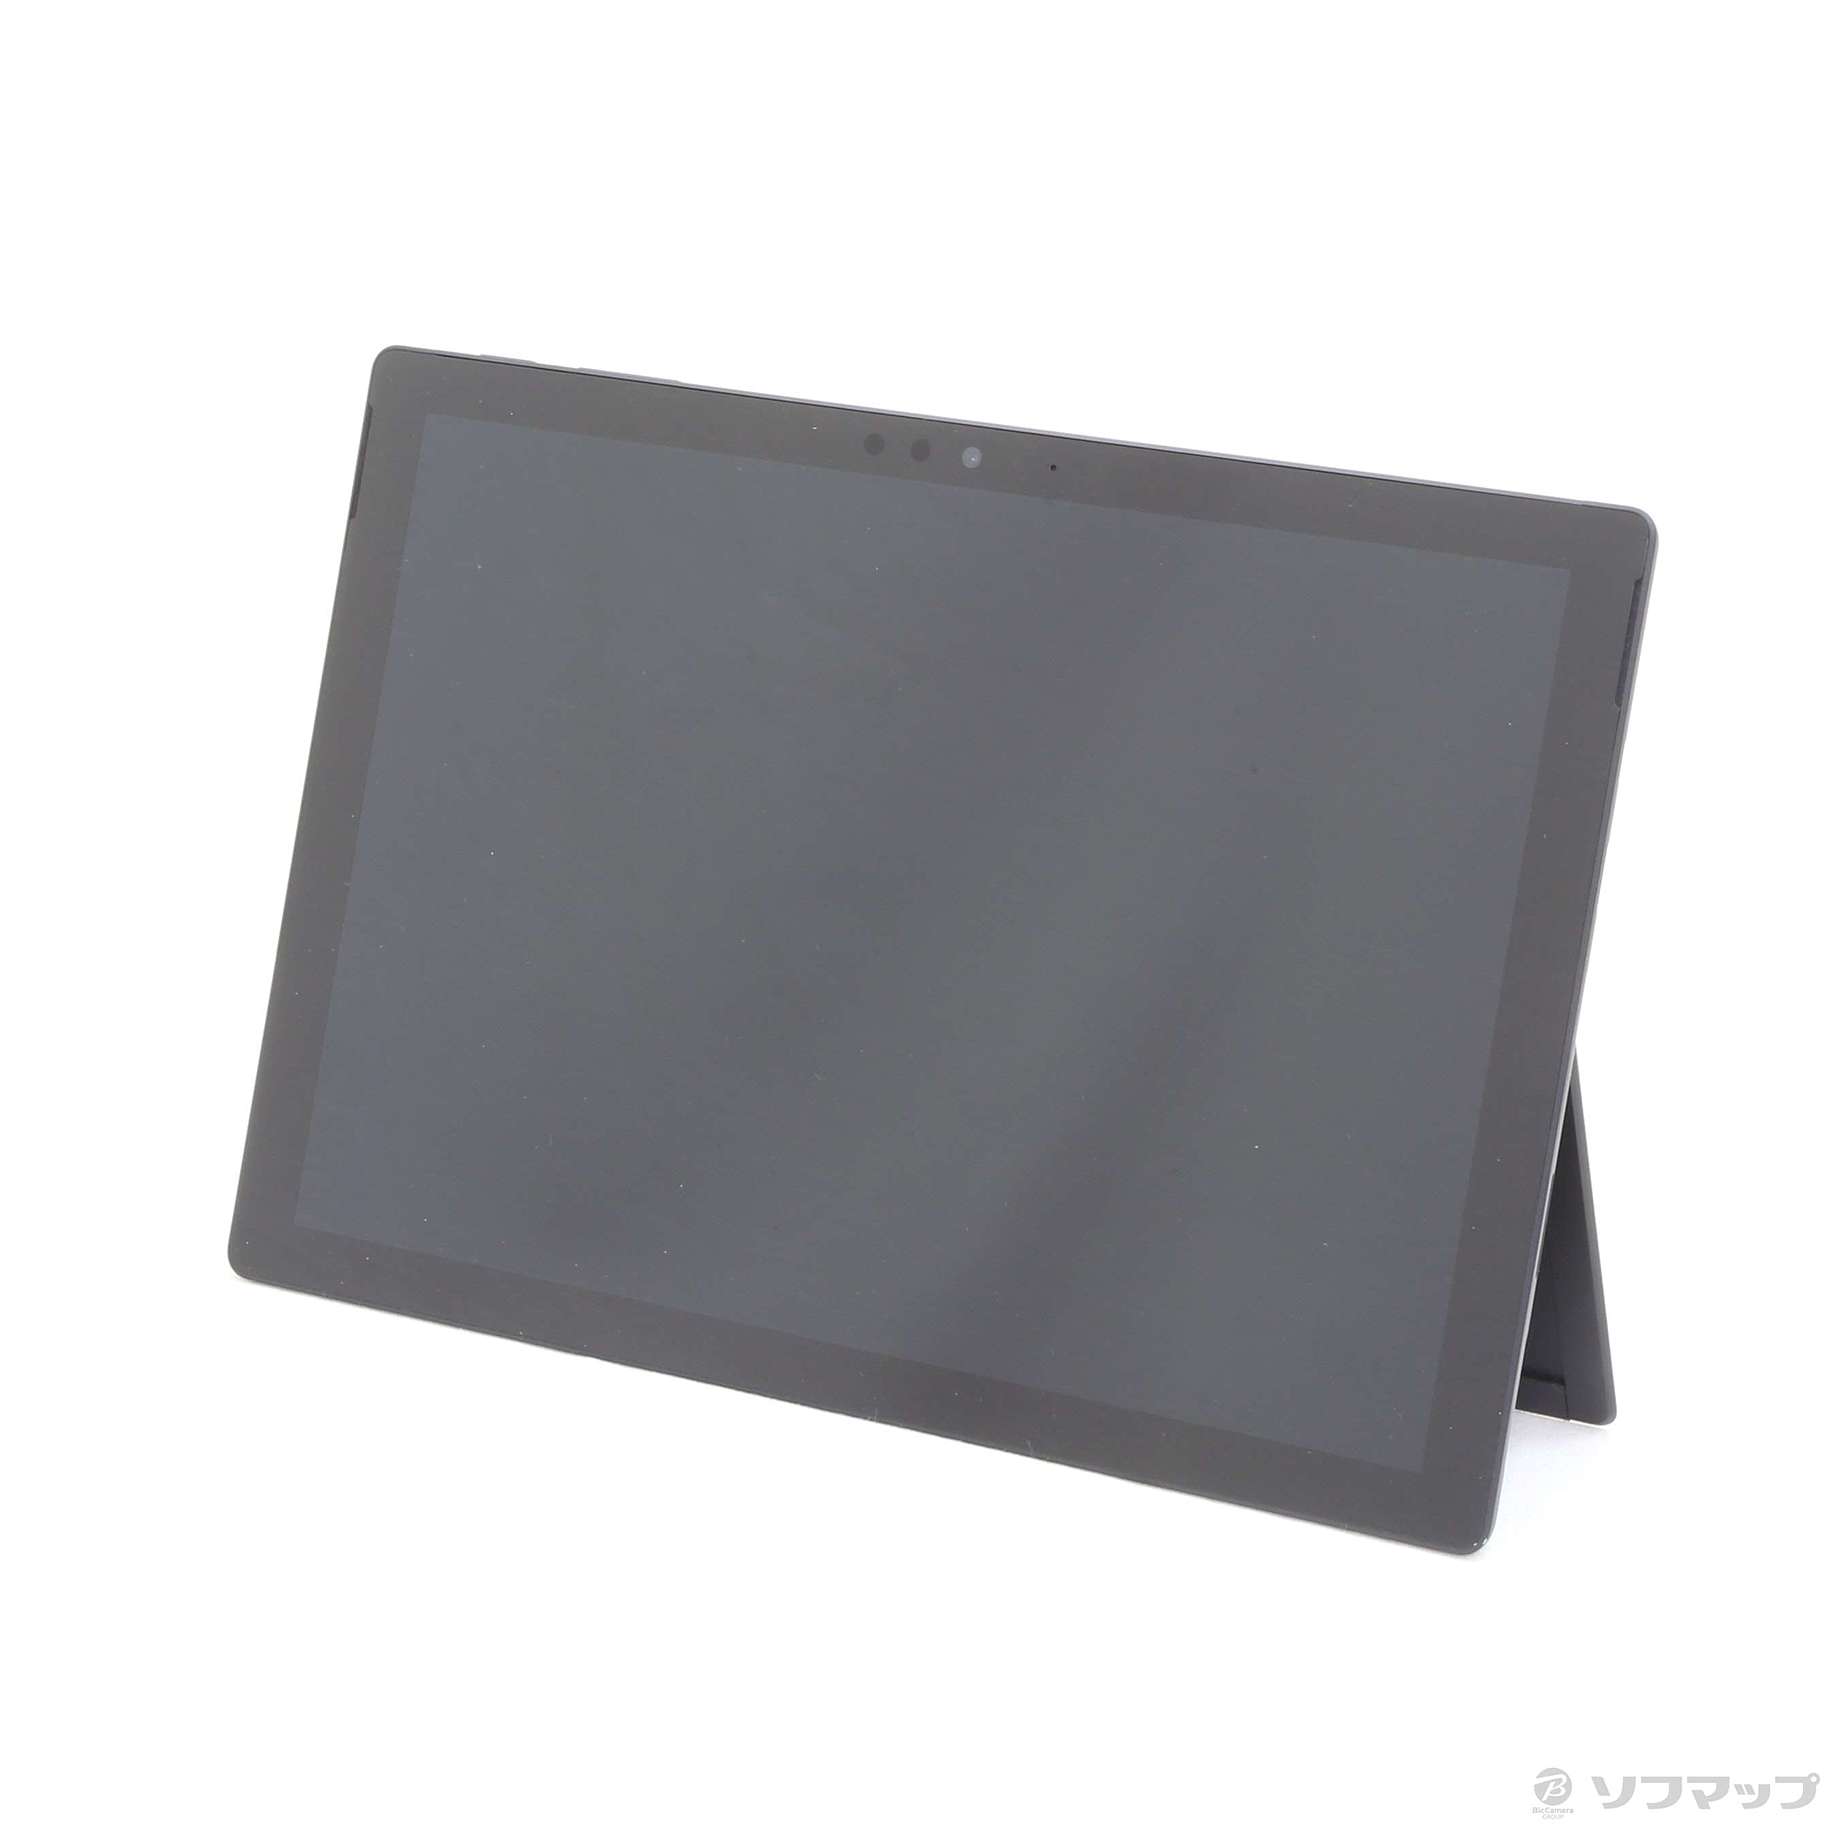 【中古】Surface Pro6 〔Core i5／8GB／SSD256GB〕 KJT-00028 ブラック 〔Windows 10〕 06/